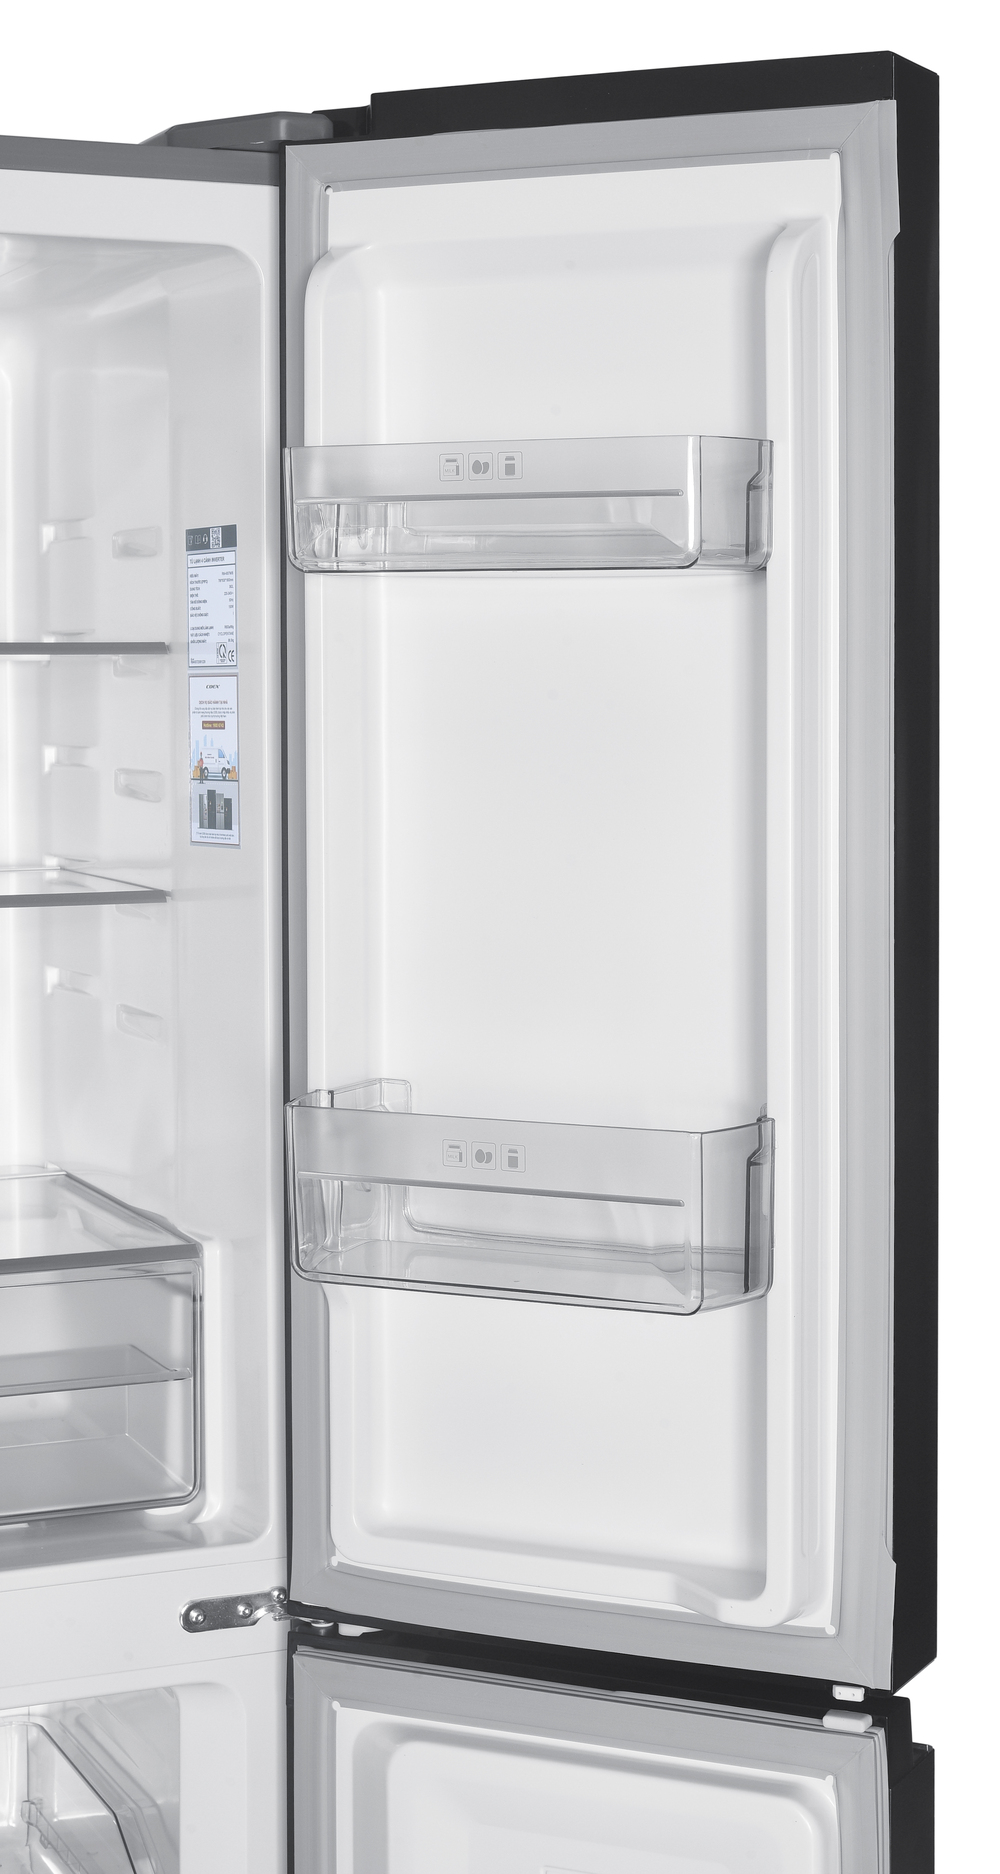 Tủ lạnh 4 cửa Inverter 362L COEX RM-4007MIB (Inox đen)